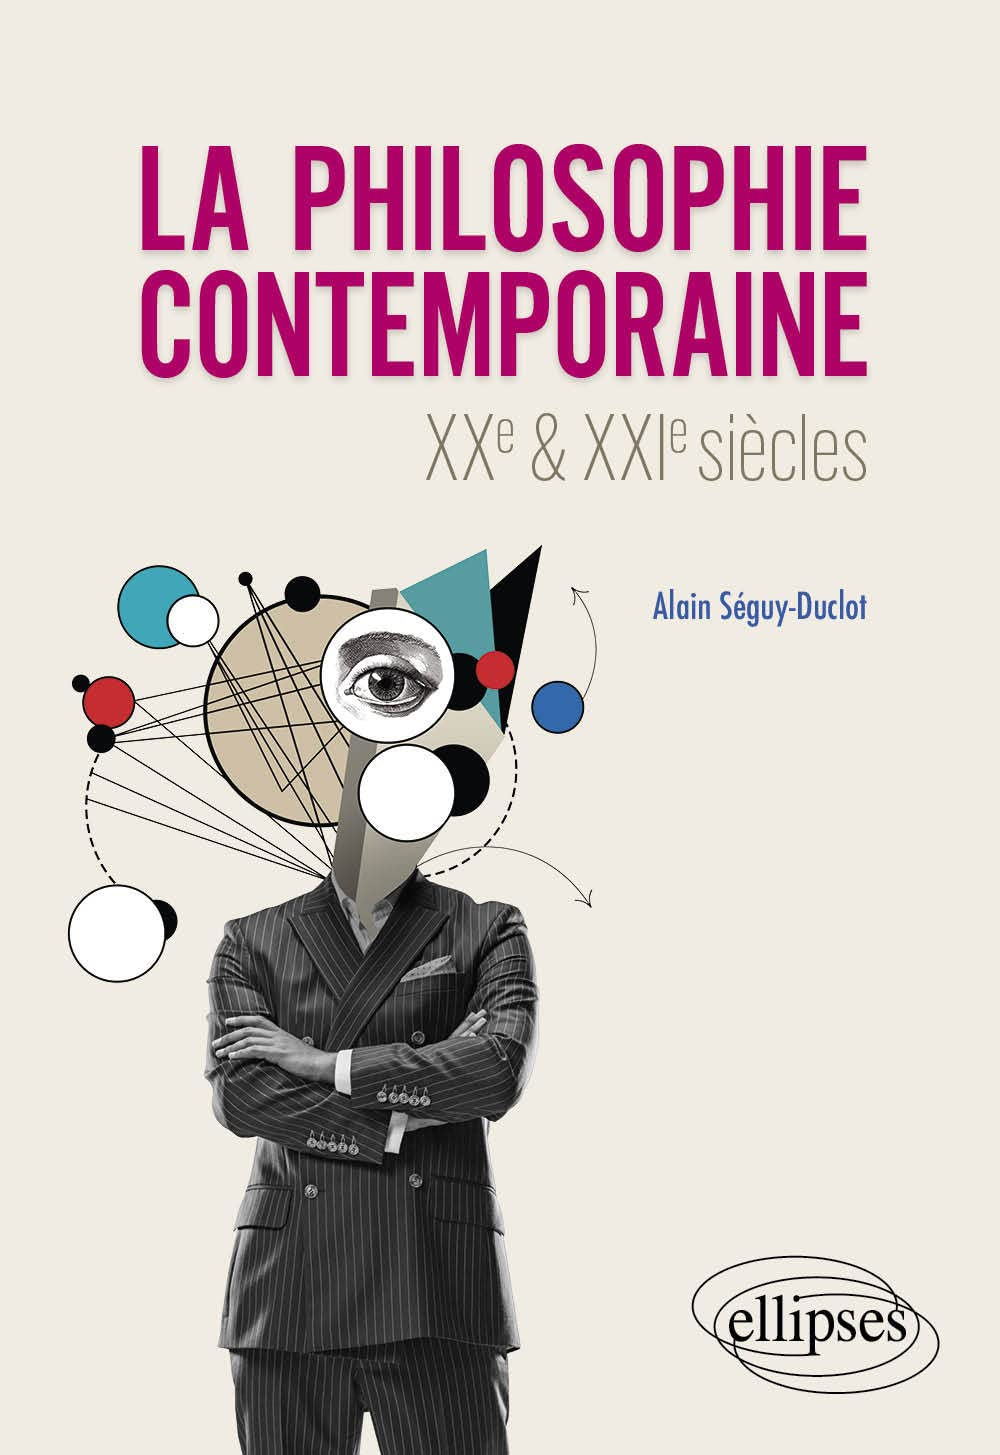 La philosophie contemporaine : XXe & XXIe siècles